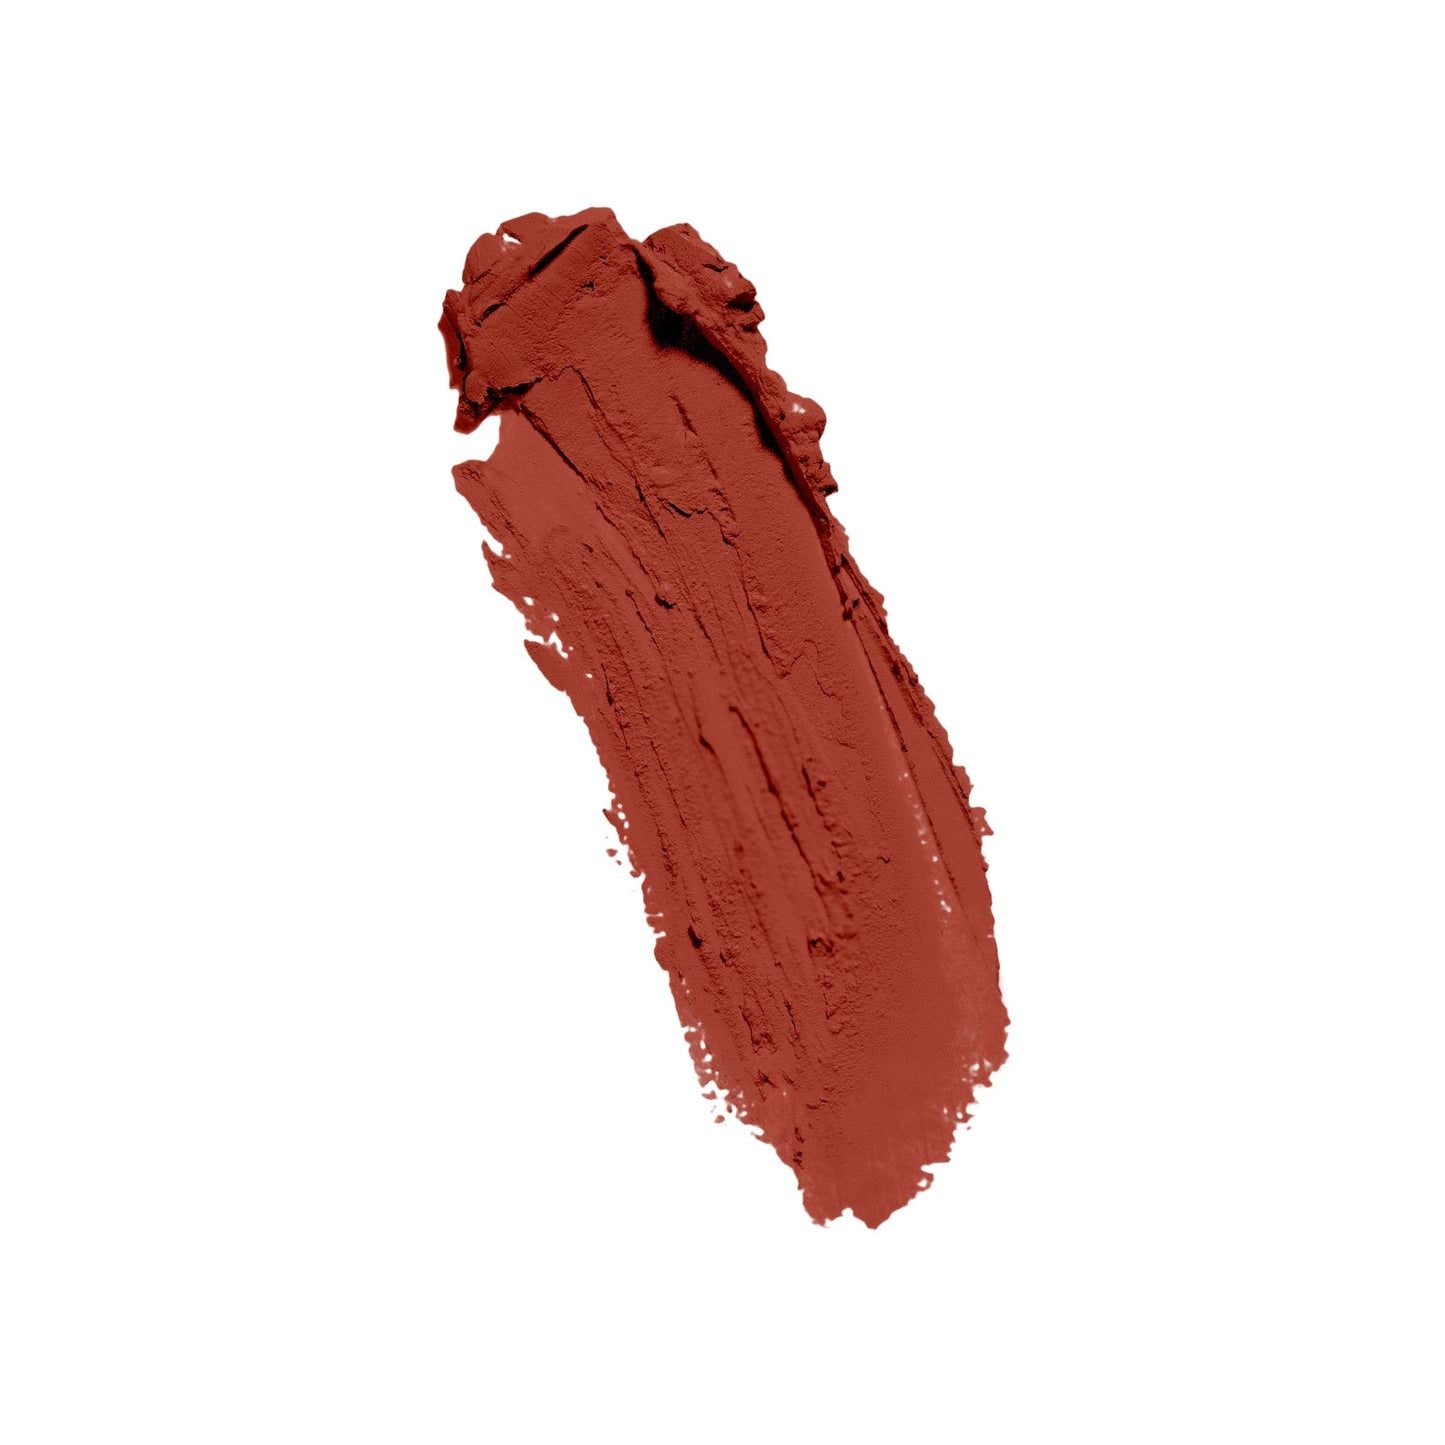 cruelty-free paraben-free makeup liquid lipstick lip bunny brown vitamin e, miami, florida